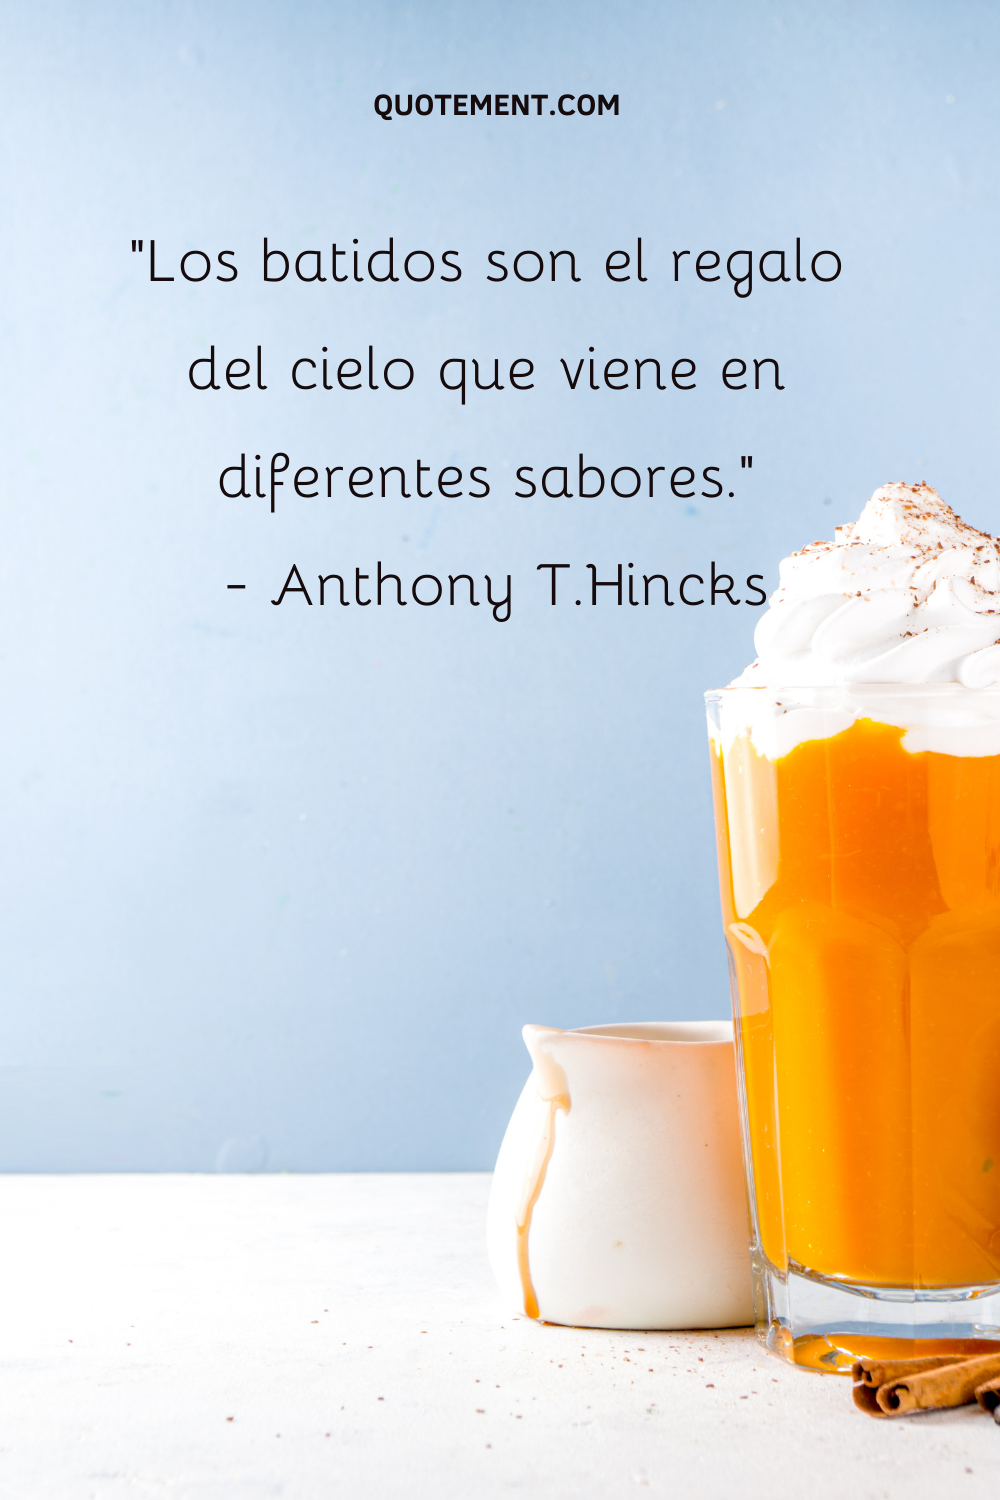 "Los batidos son el regalo del cielo que viene en diferentes sabores". - Anthony T.Hincks